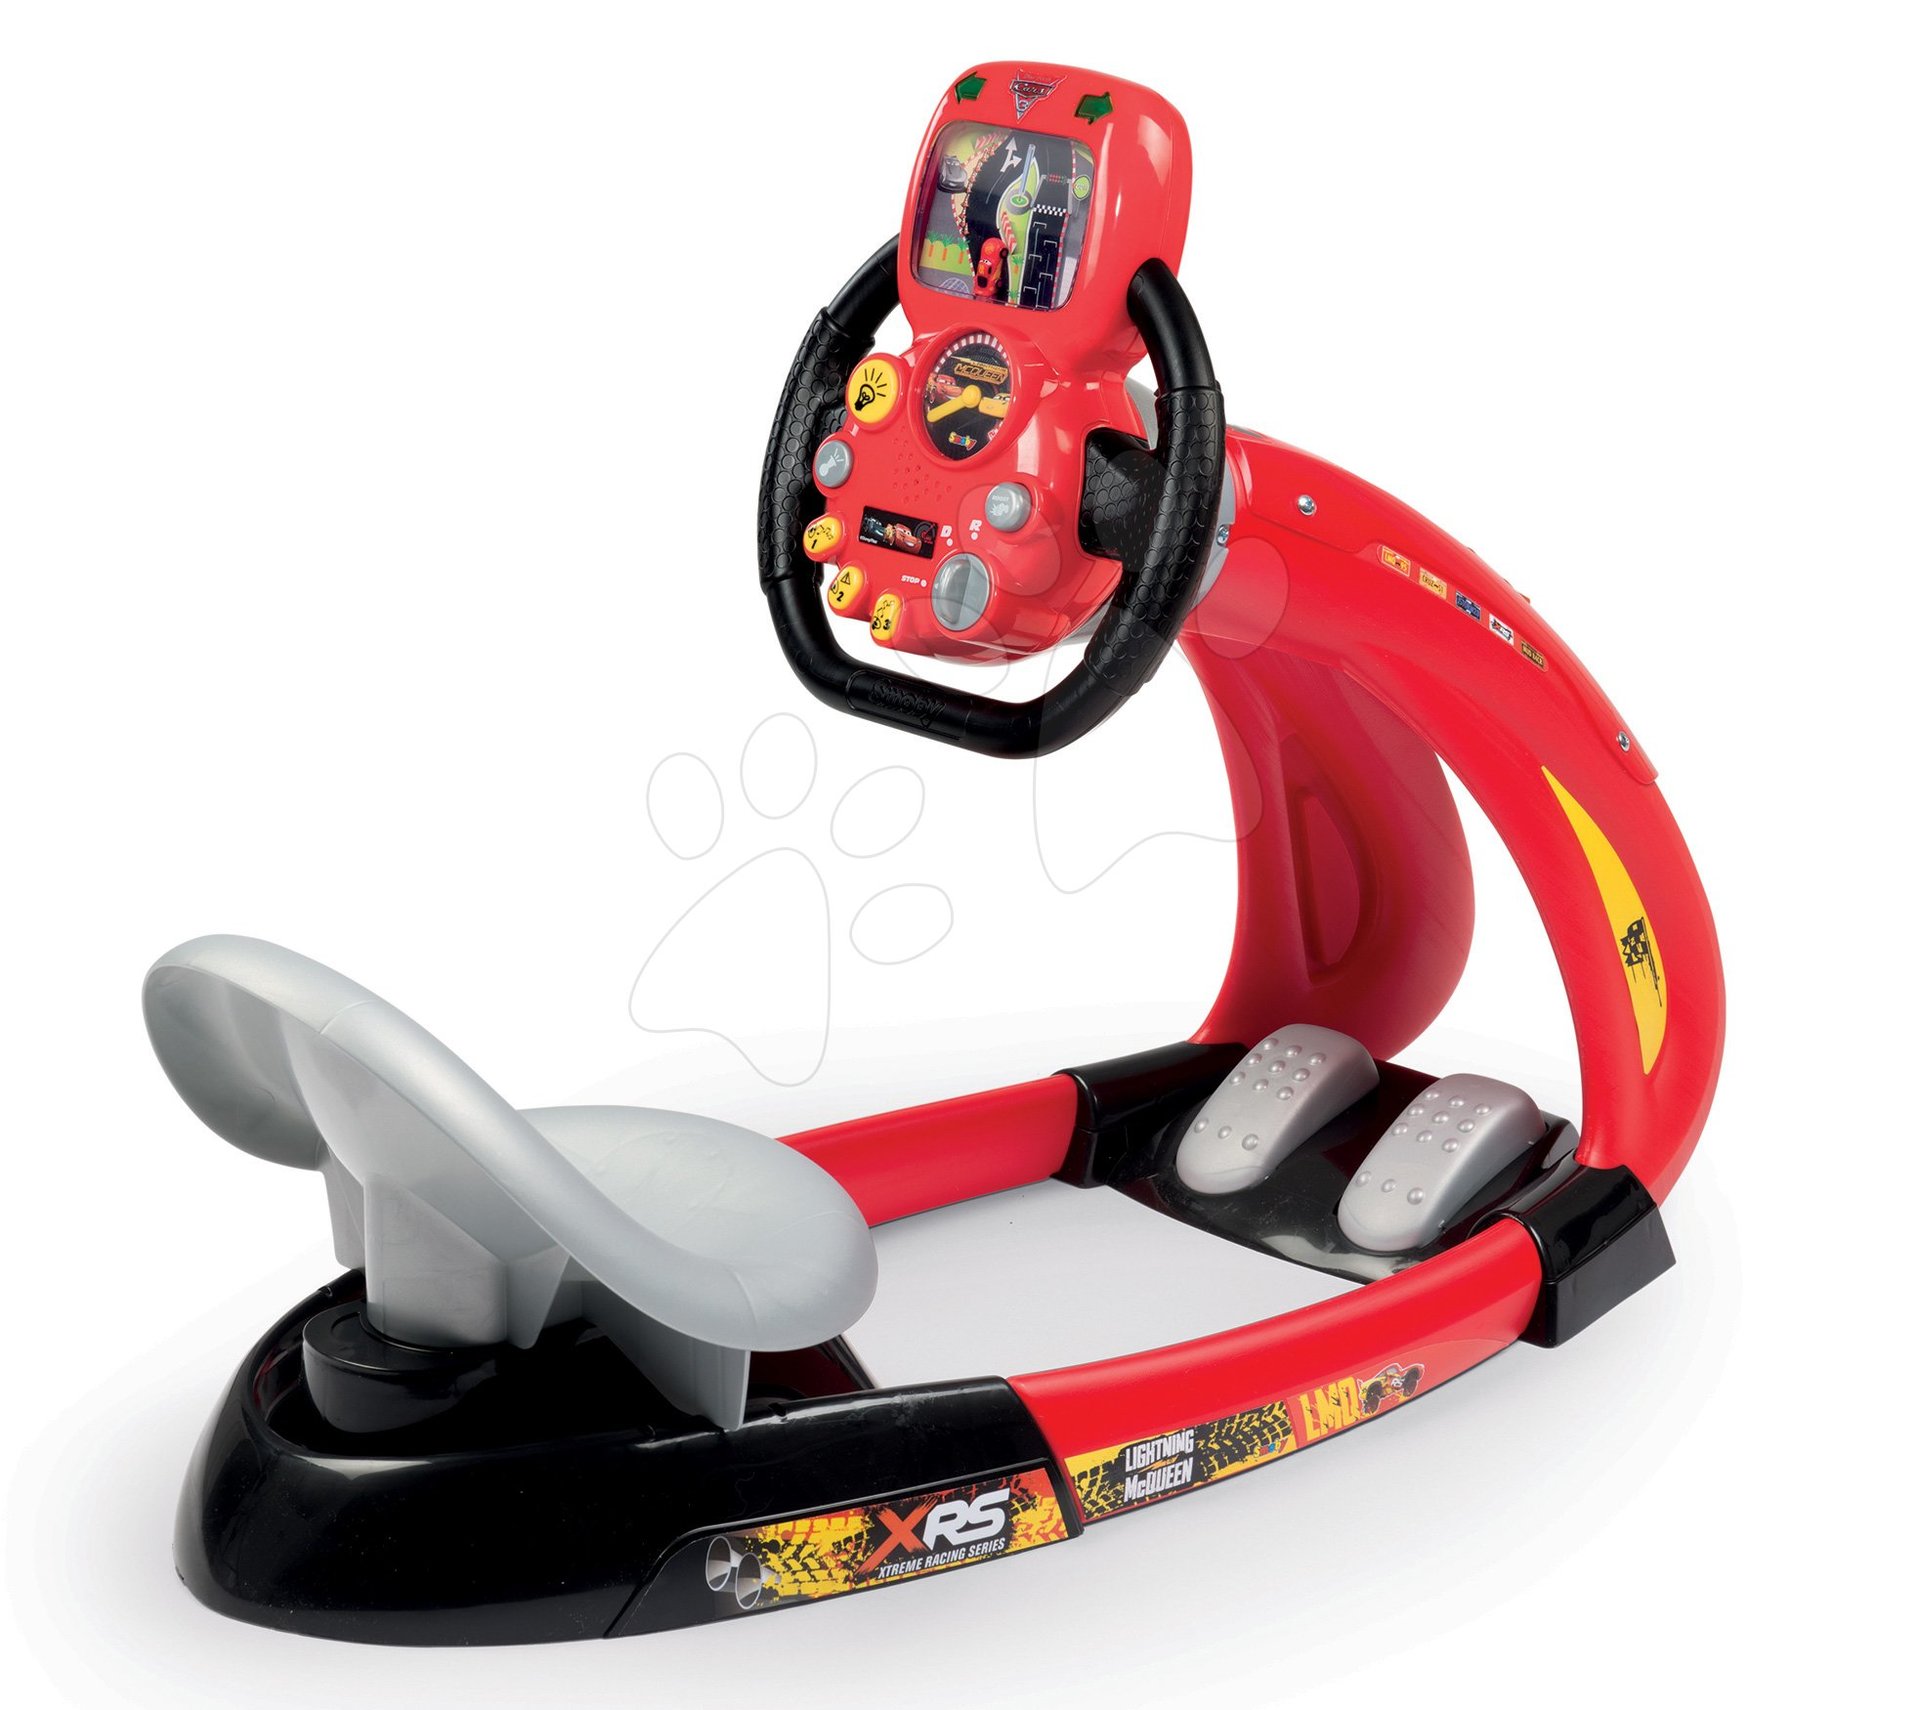 Trenažér pre deti - Trenažér Flash McQueen Cars XRS Smoby elektronický s pretekárskym simulátorom a držiakom smartfónu